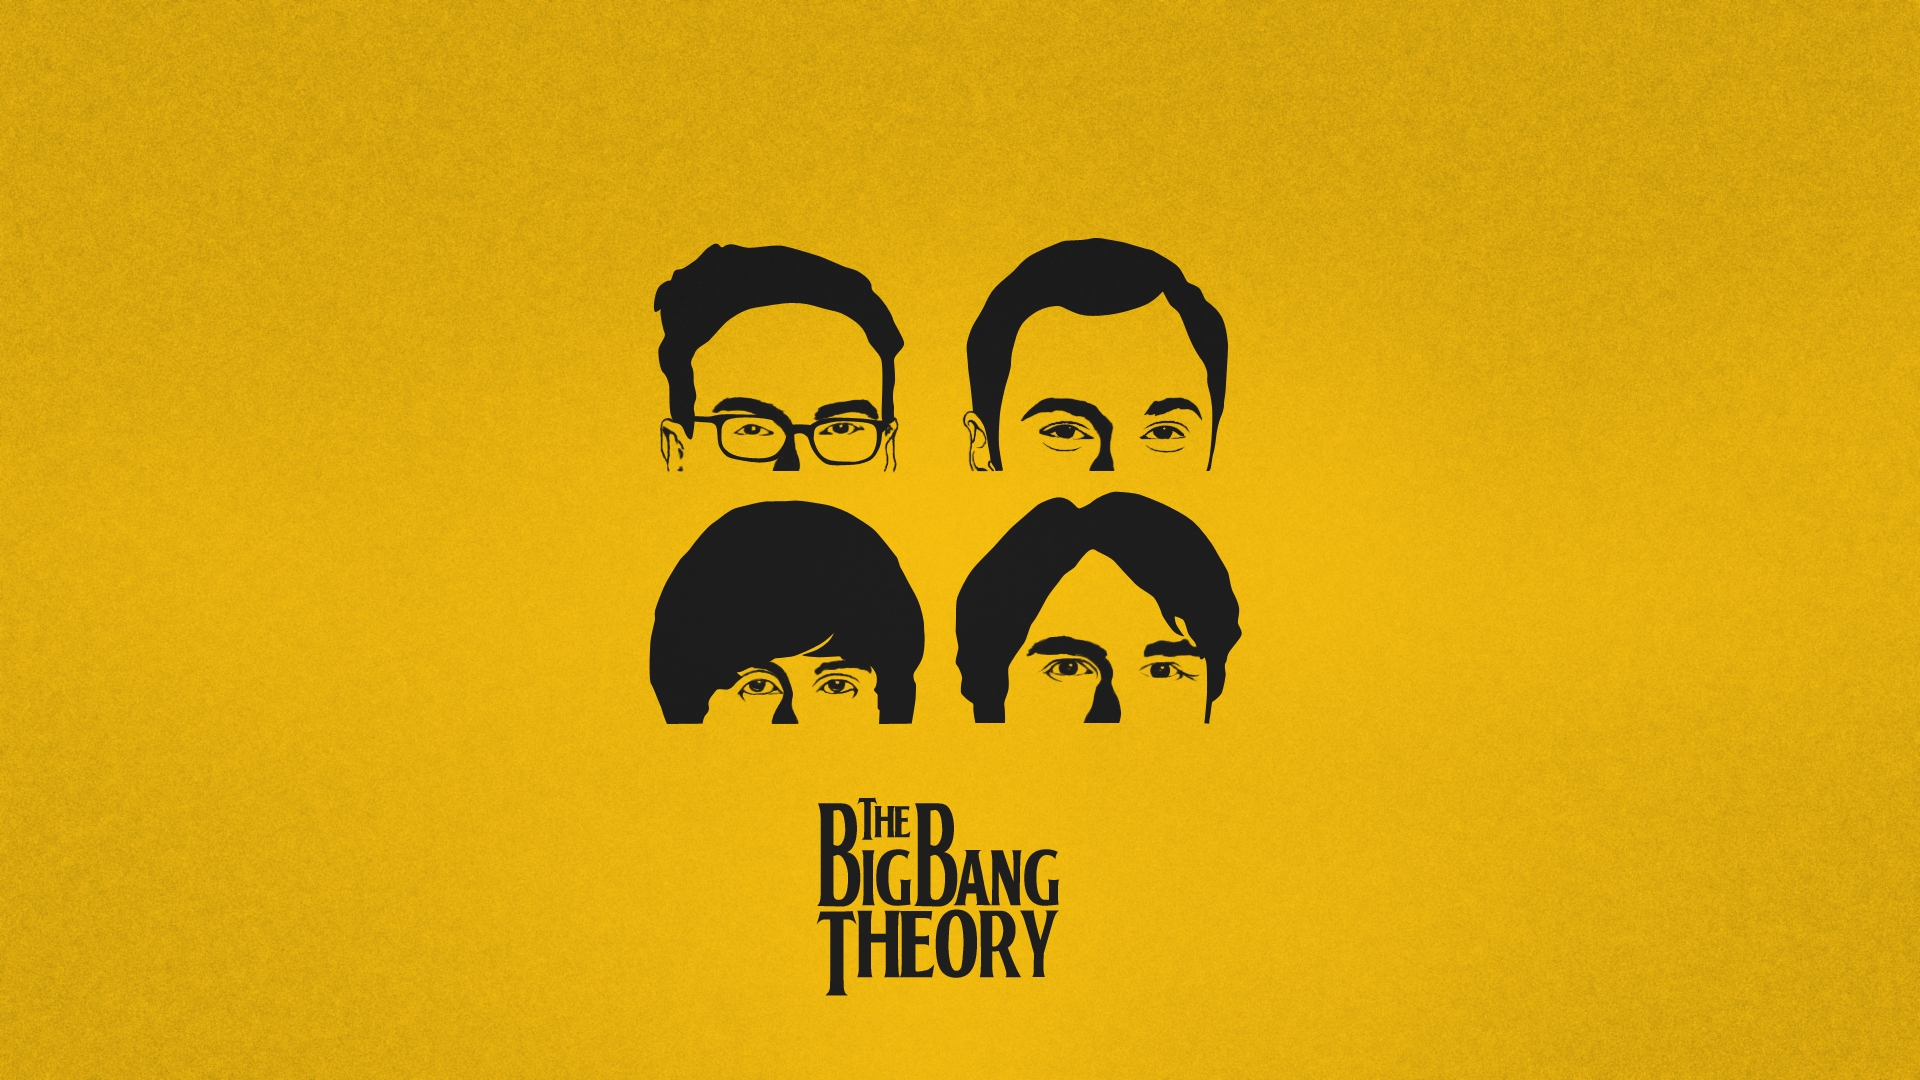 Big Bang Theory Wallpaper High Definition